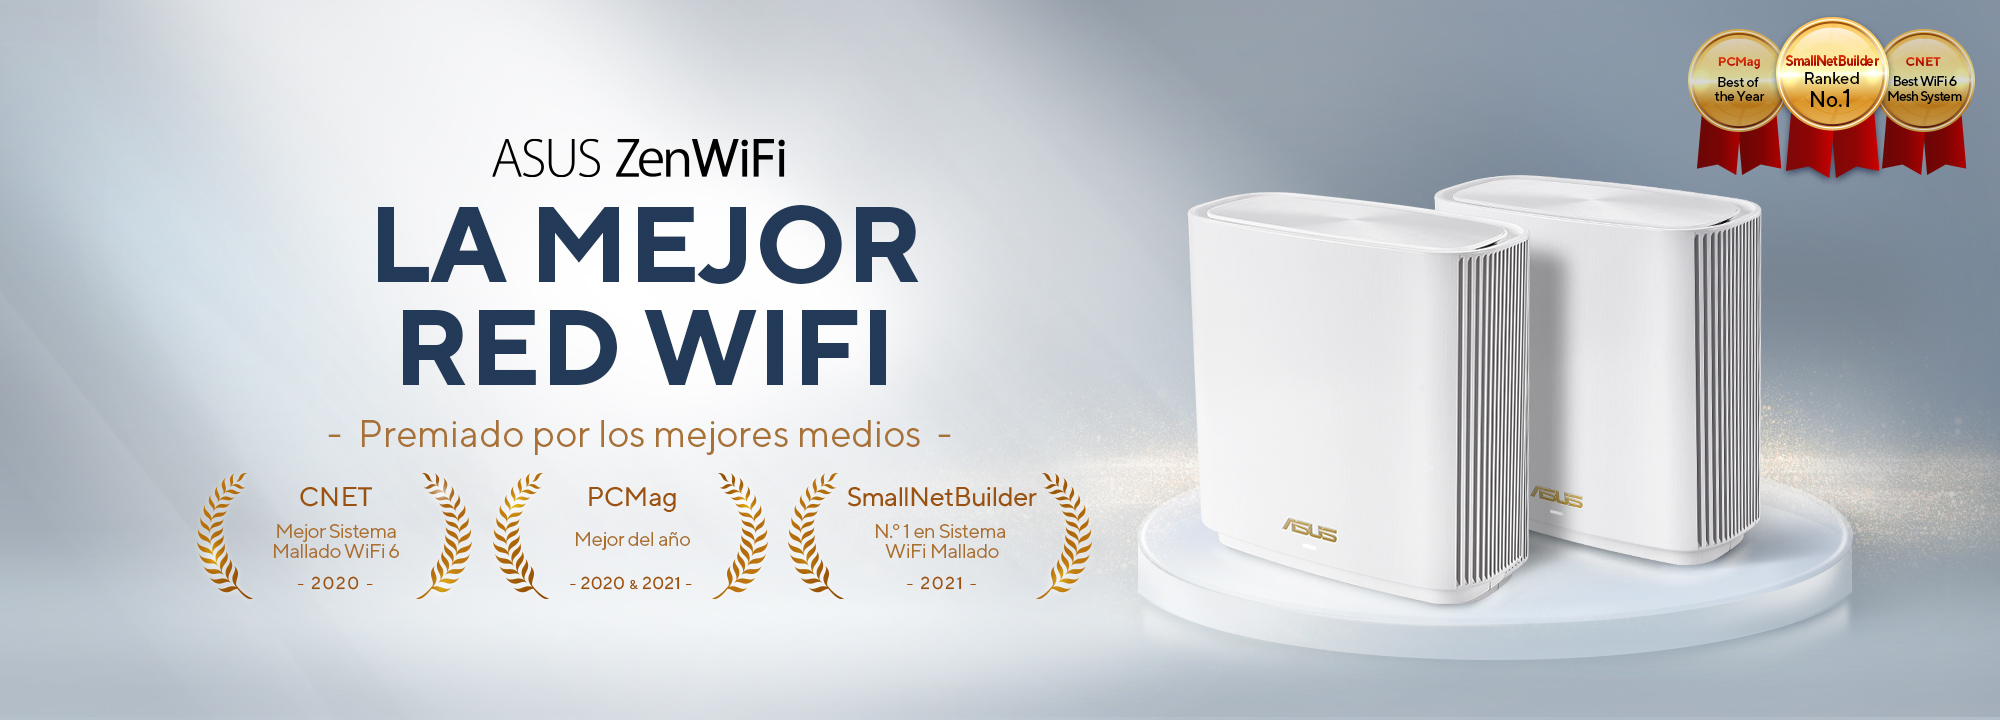 Los mejores sistemas WiFi Mesh para mejorar la cobertura en casa